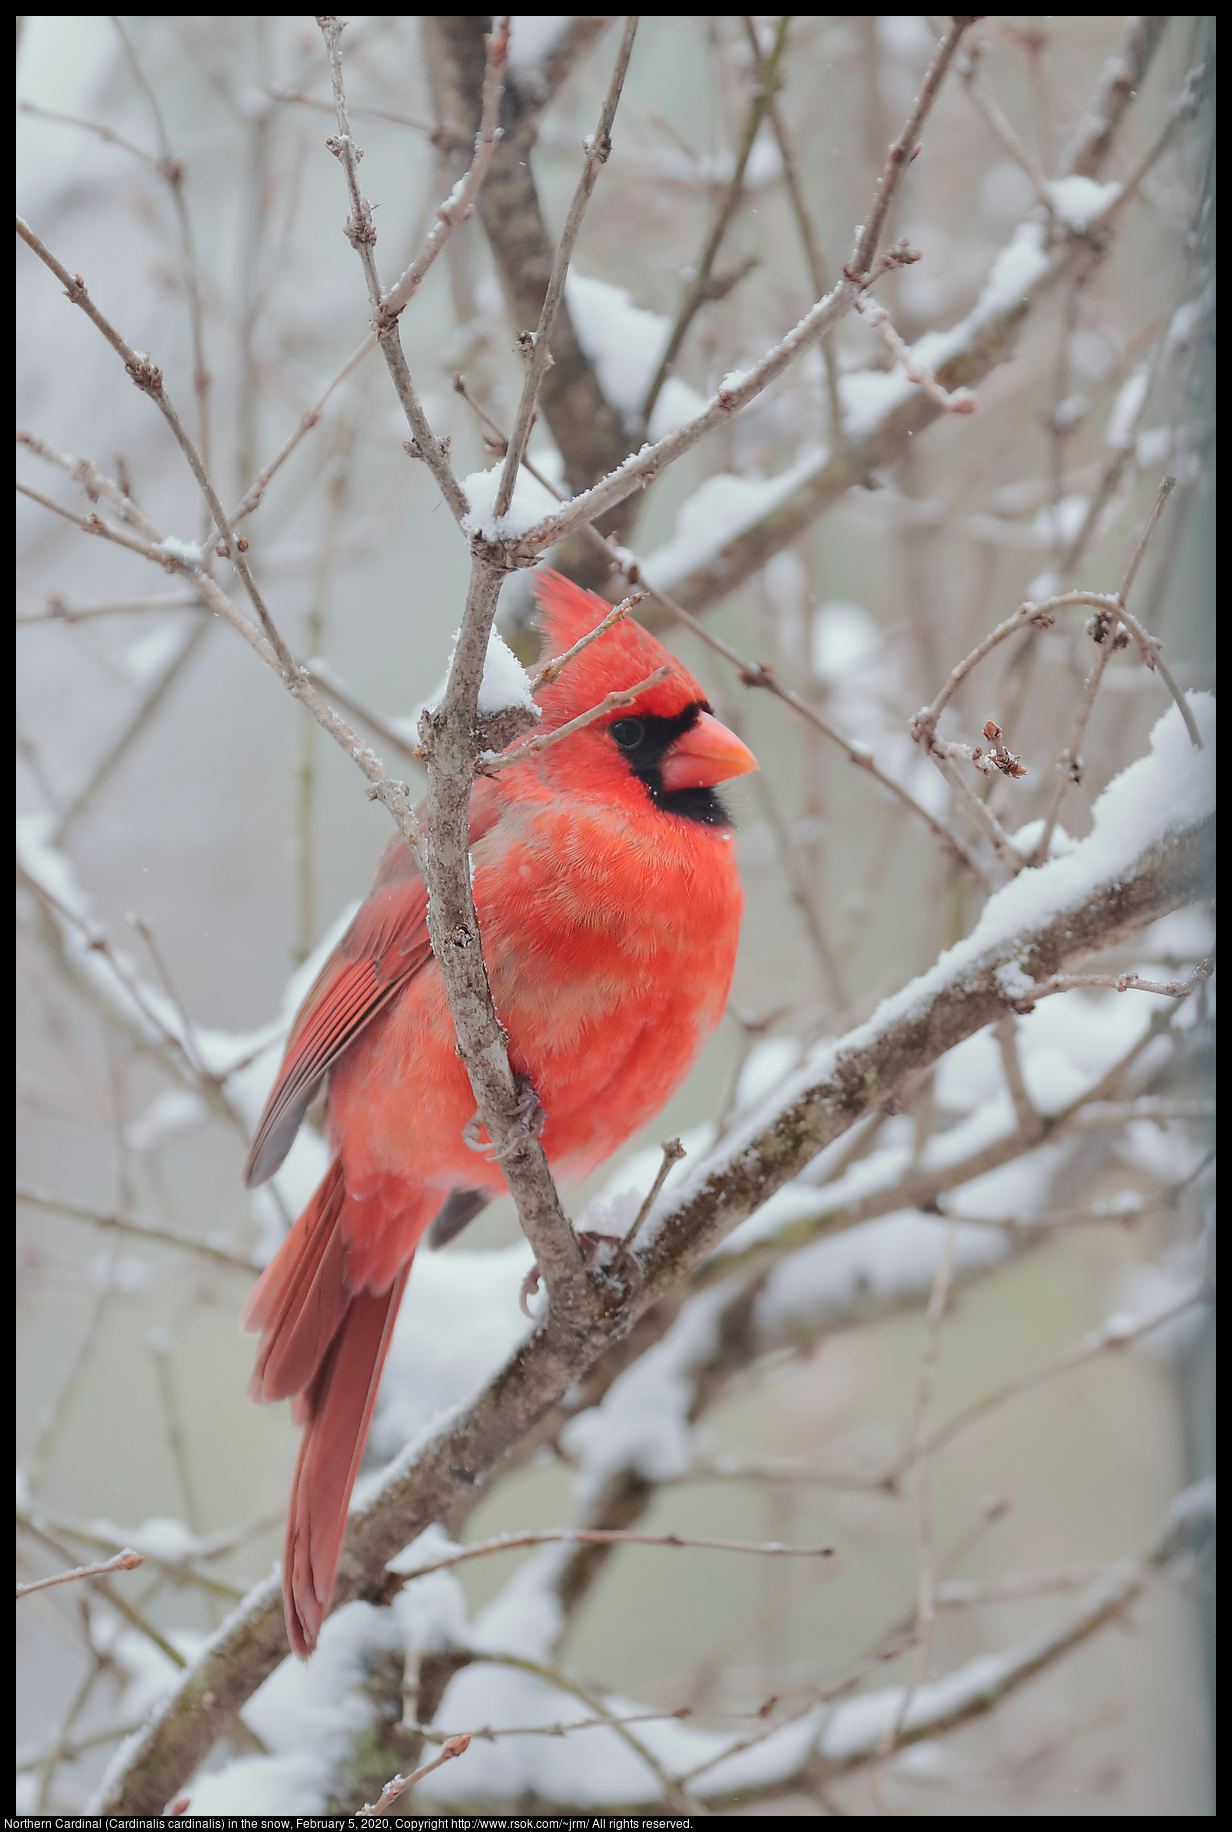 Northern Cardinal (Cardinalis cardinalis) in the snow, February 5, 2020